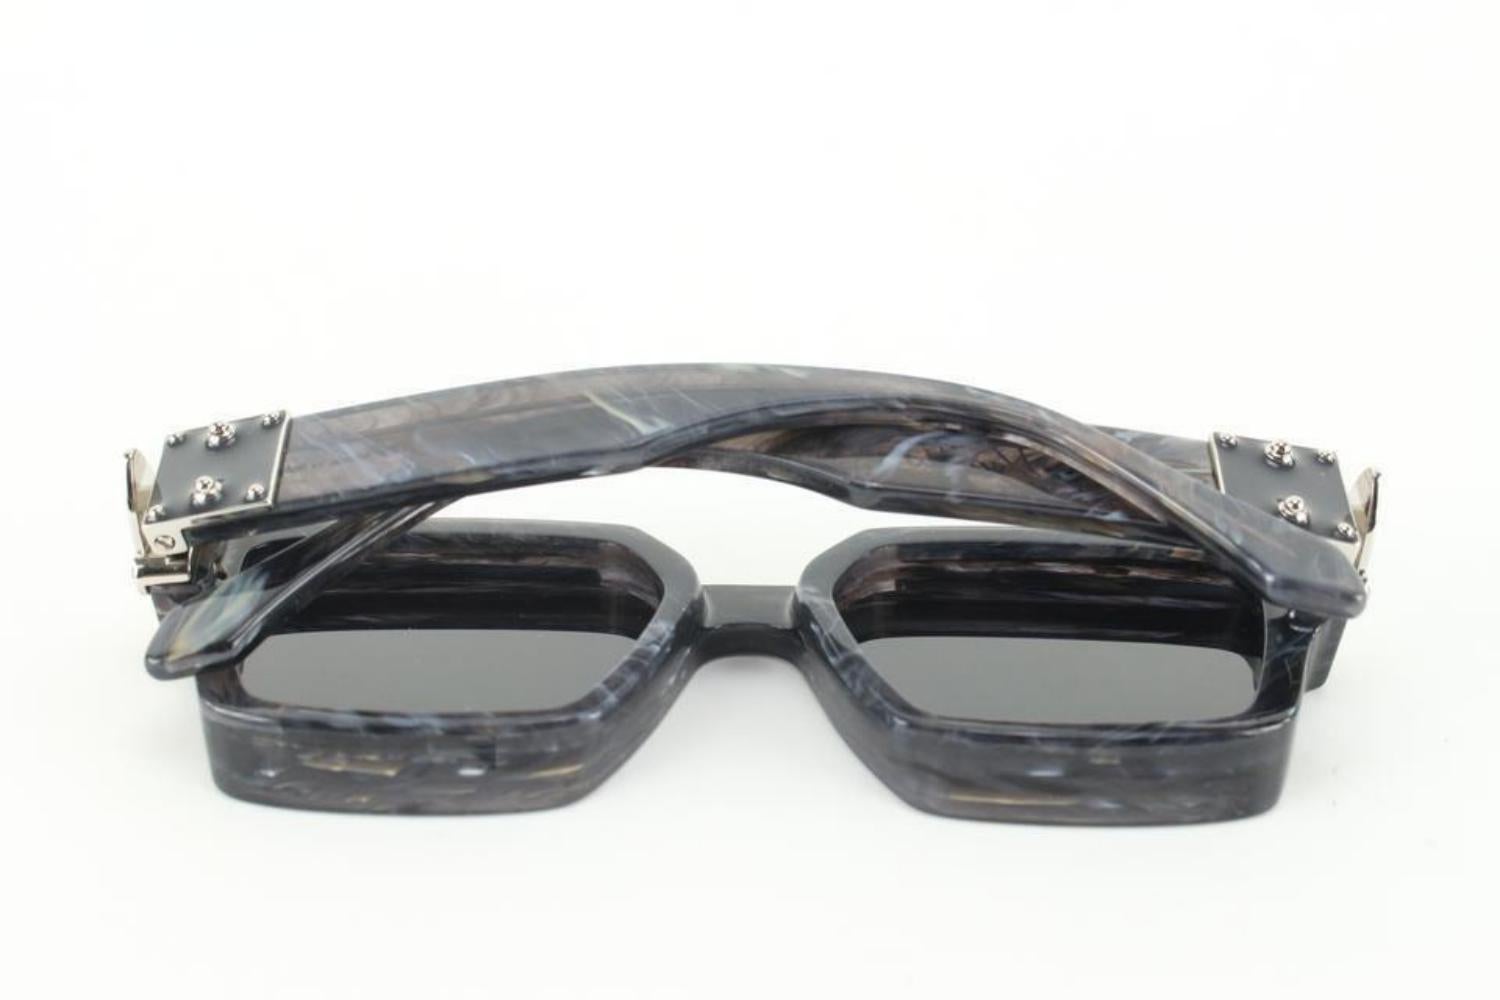 Louis+Vuitton+1.1+Millionaire+Sunglasses+-+Z1165E for sale online